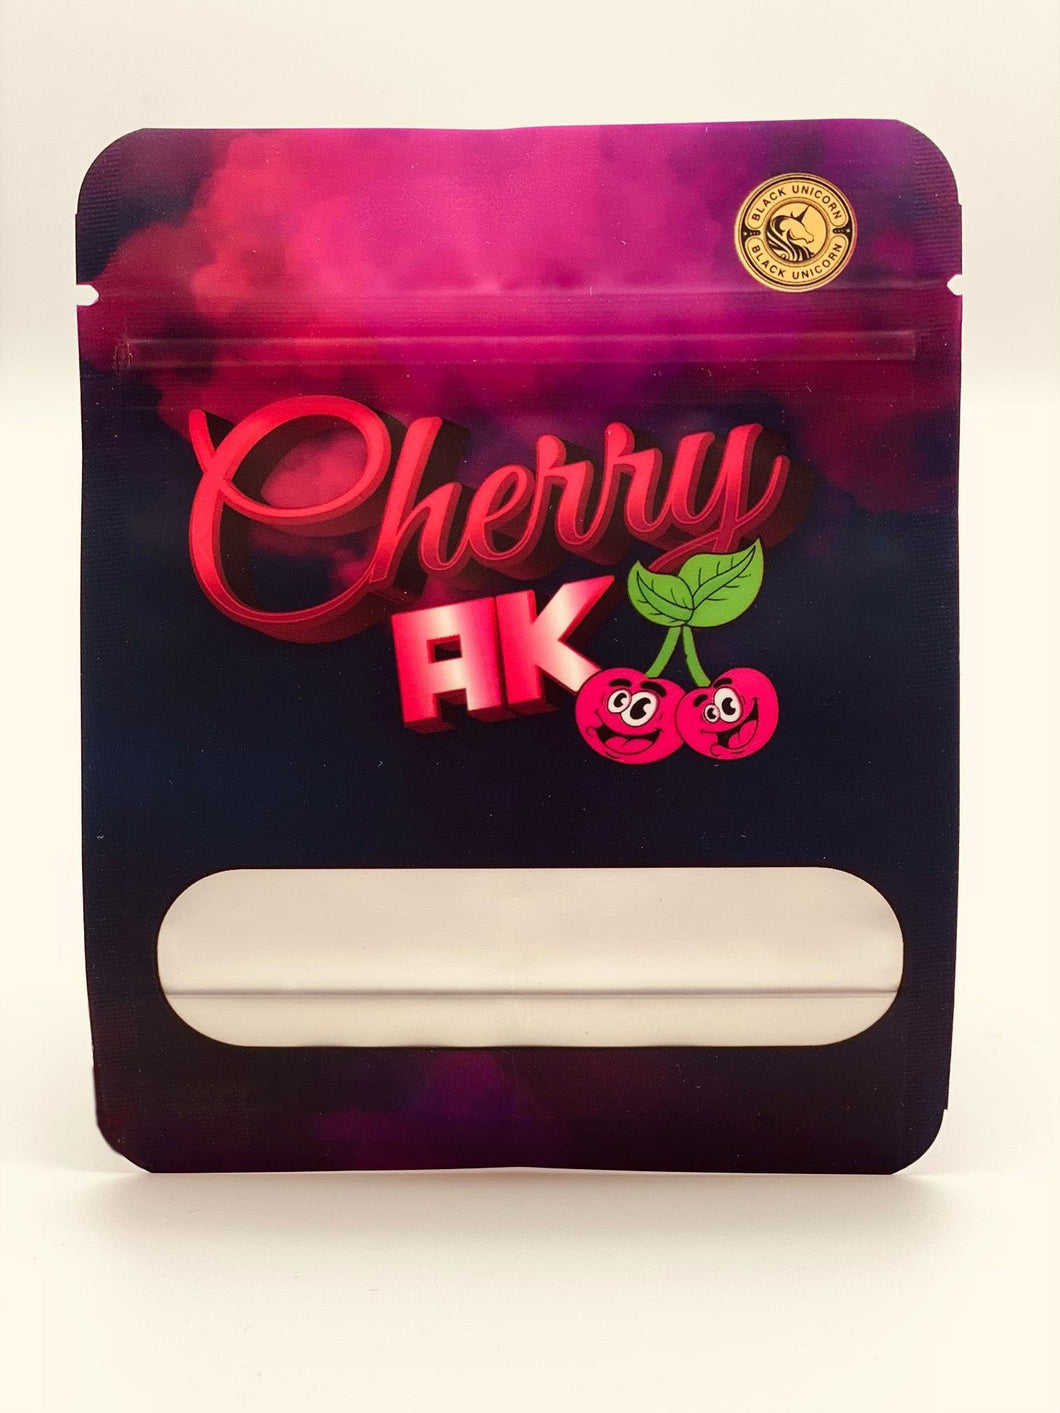 50 Cherry AK 3.5 gram empty Mylar bags.